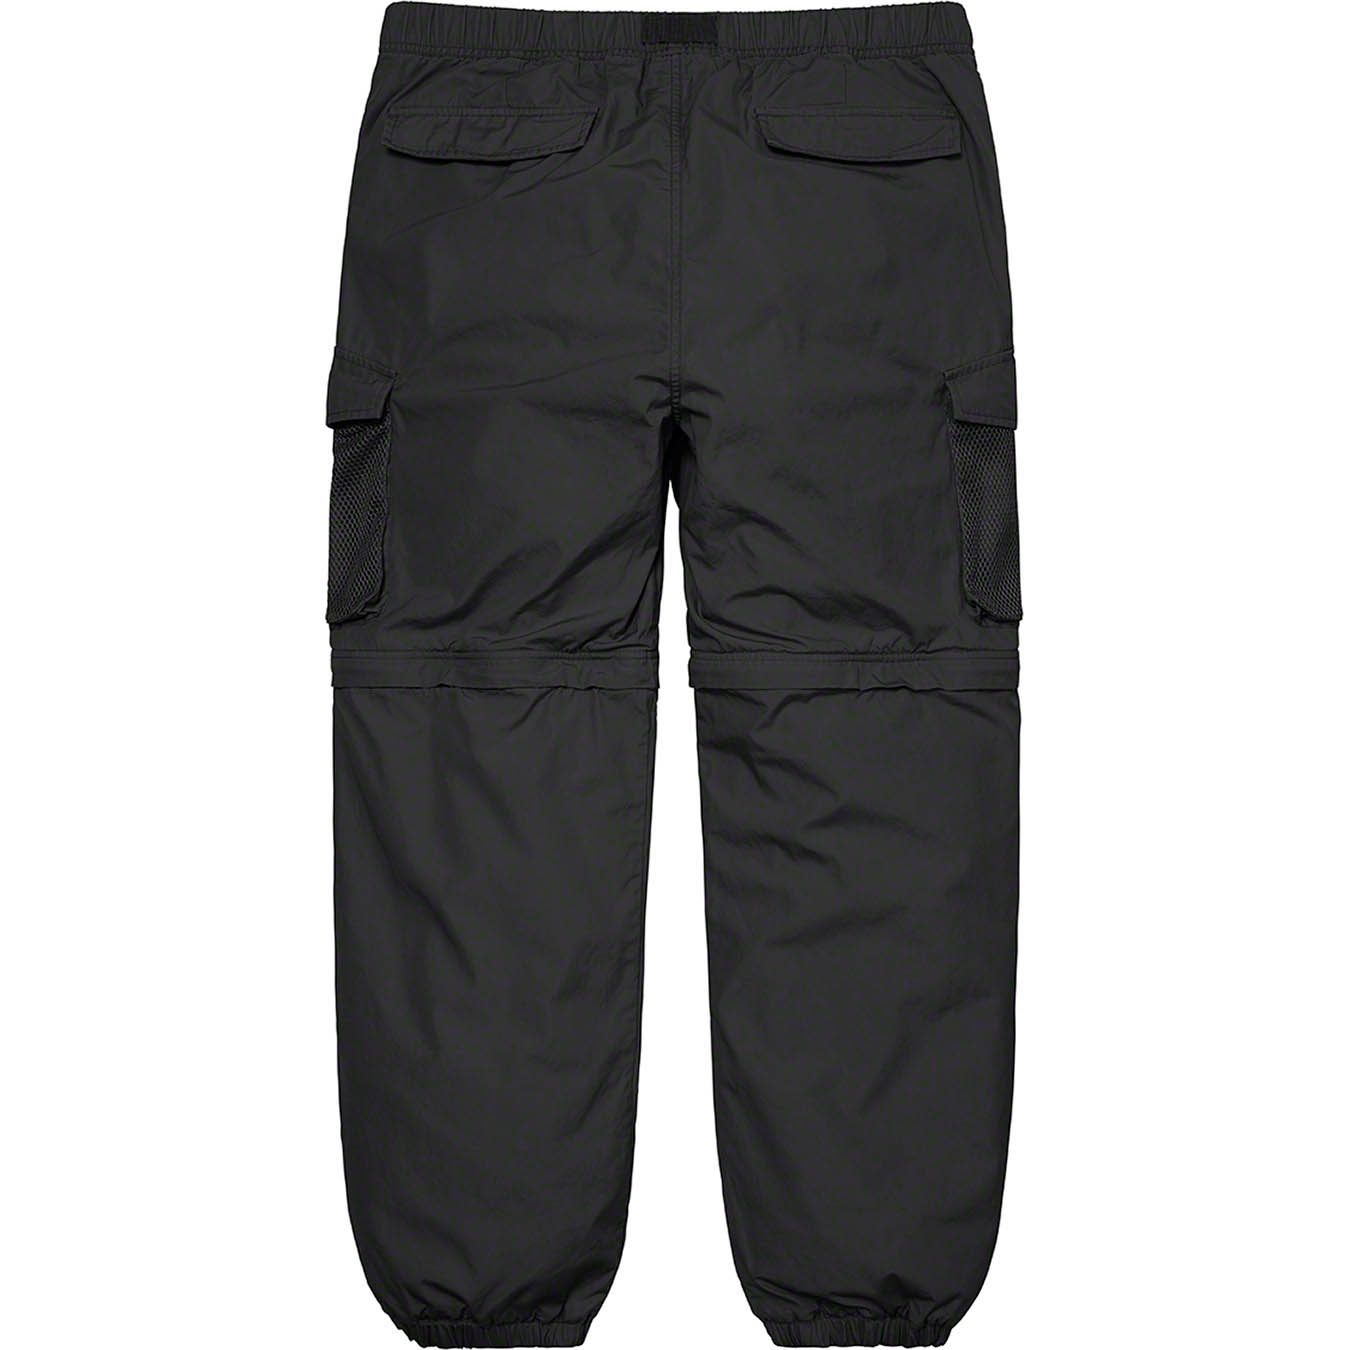 Mesh Pocket Belted Cargo Pant | Supreme 21ss